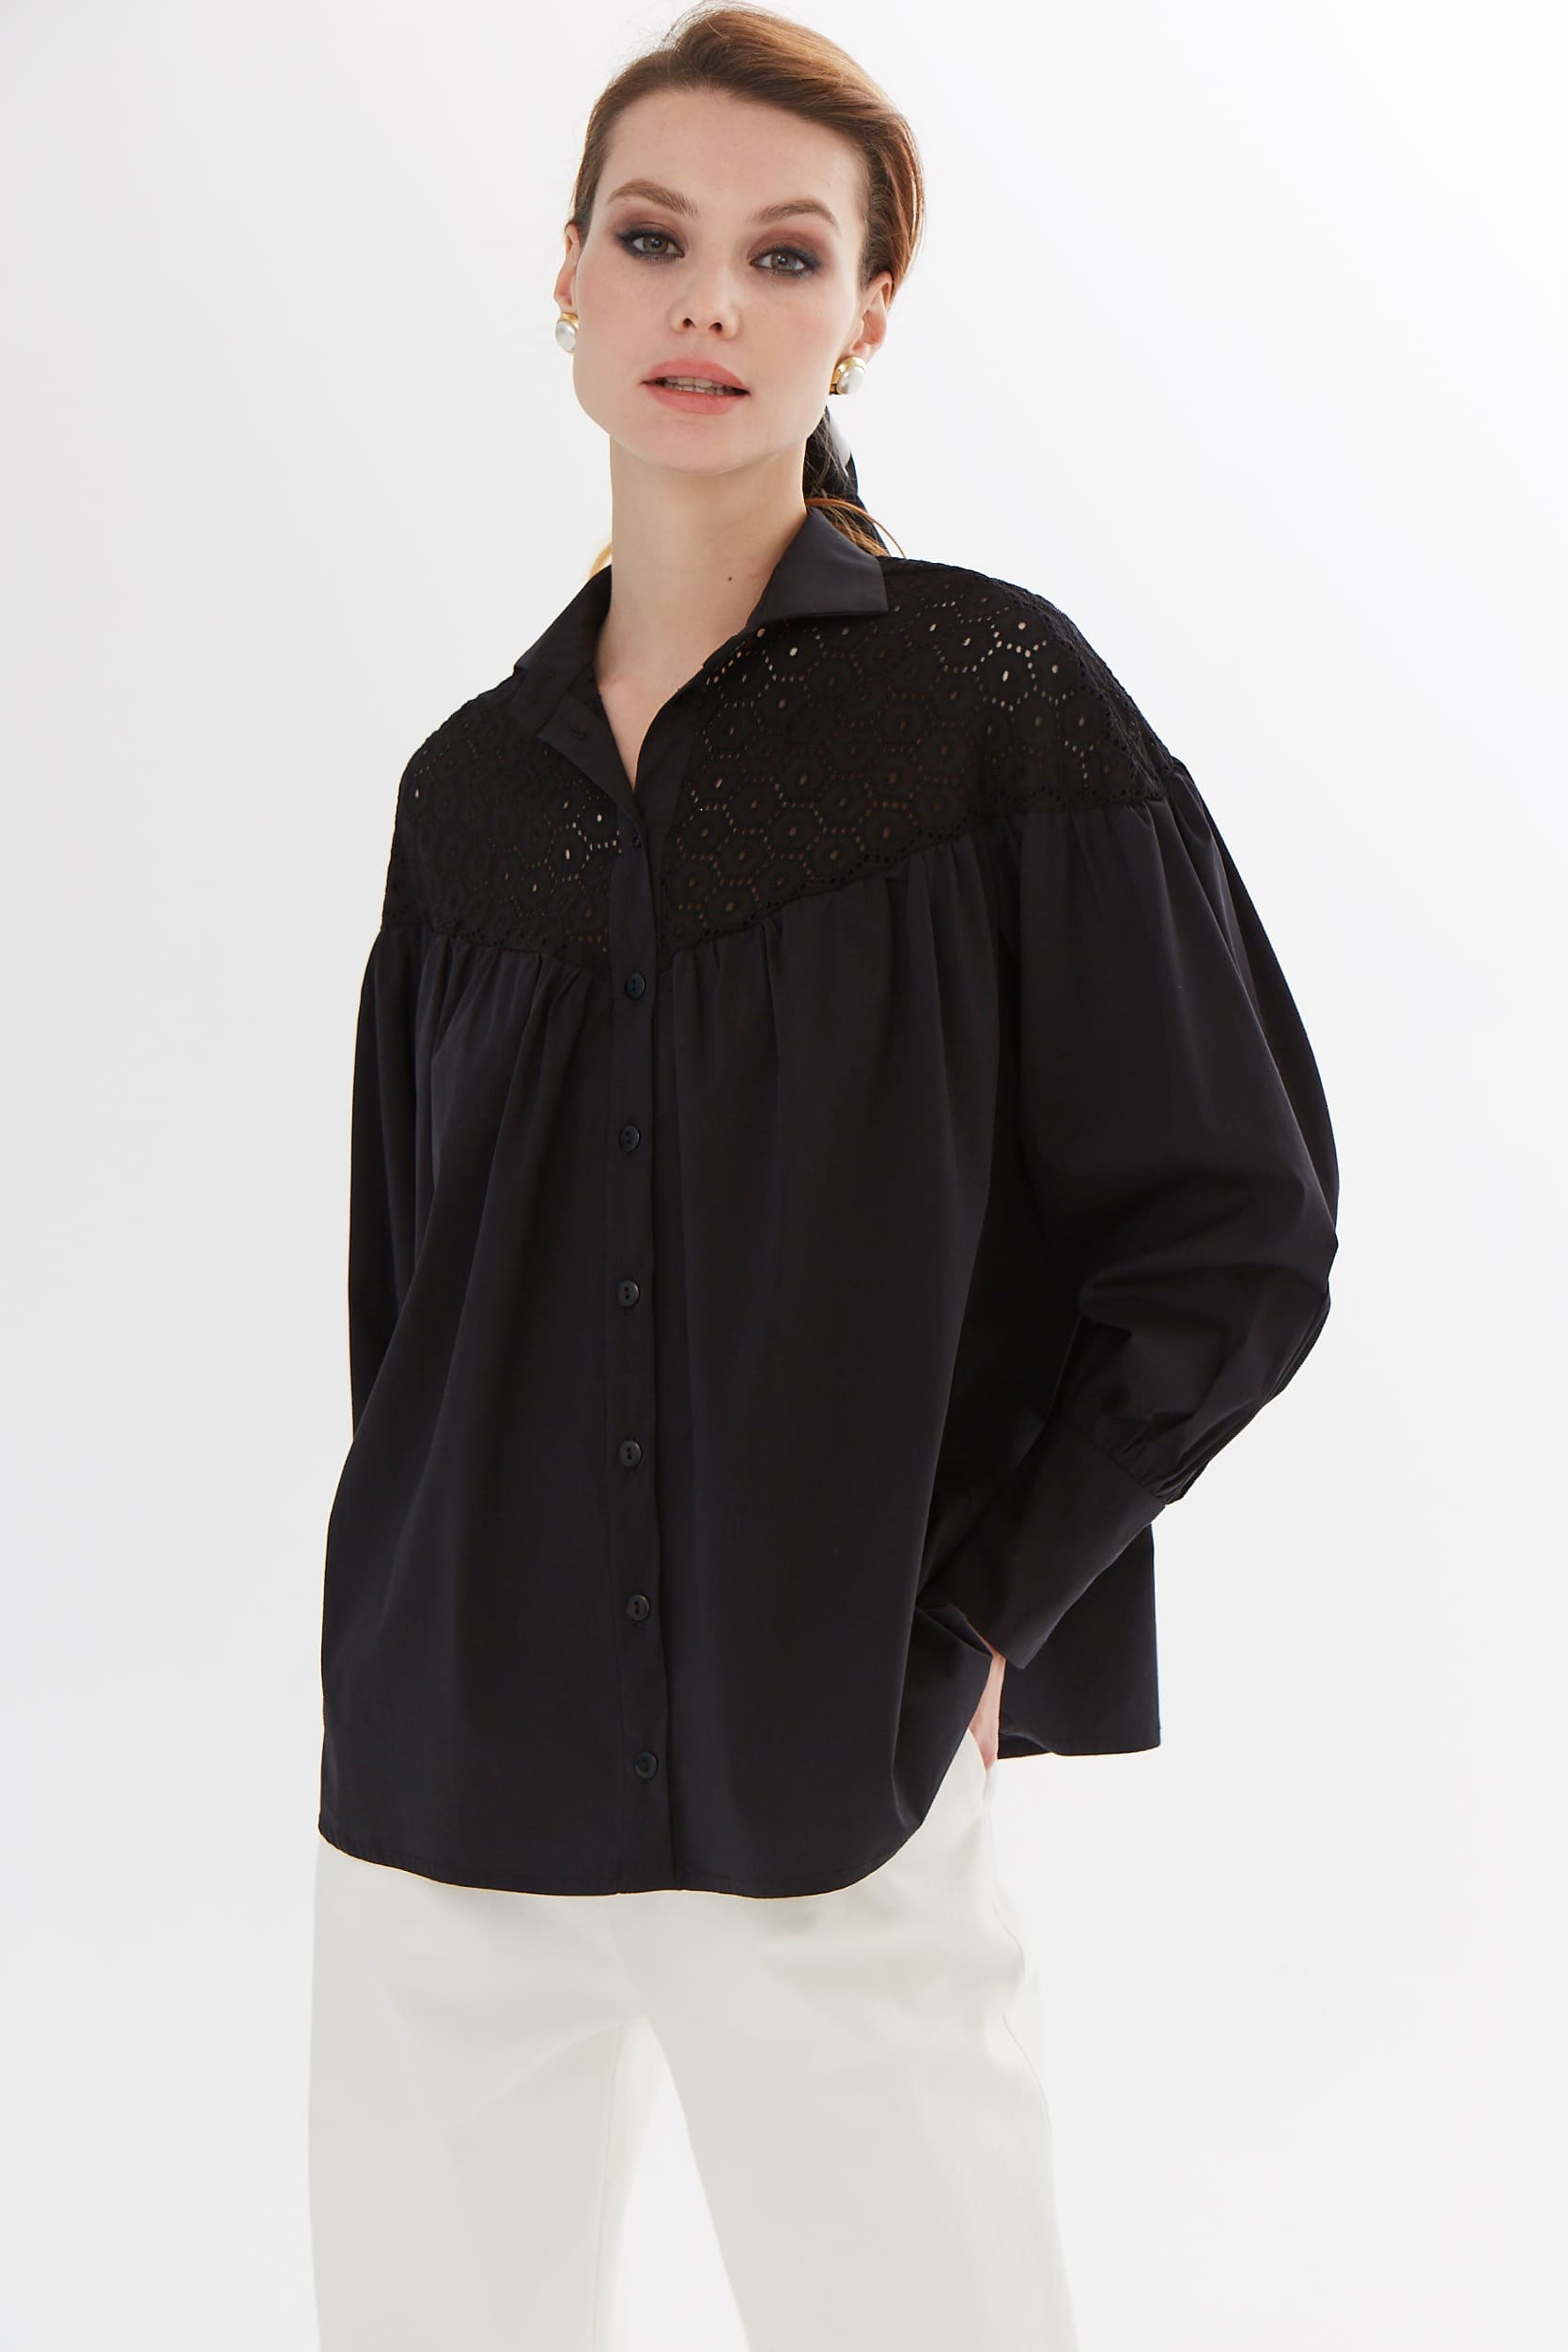 Блуза черная с шитьем 